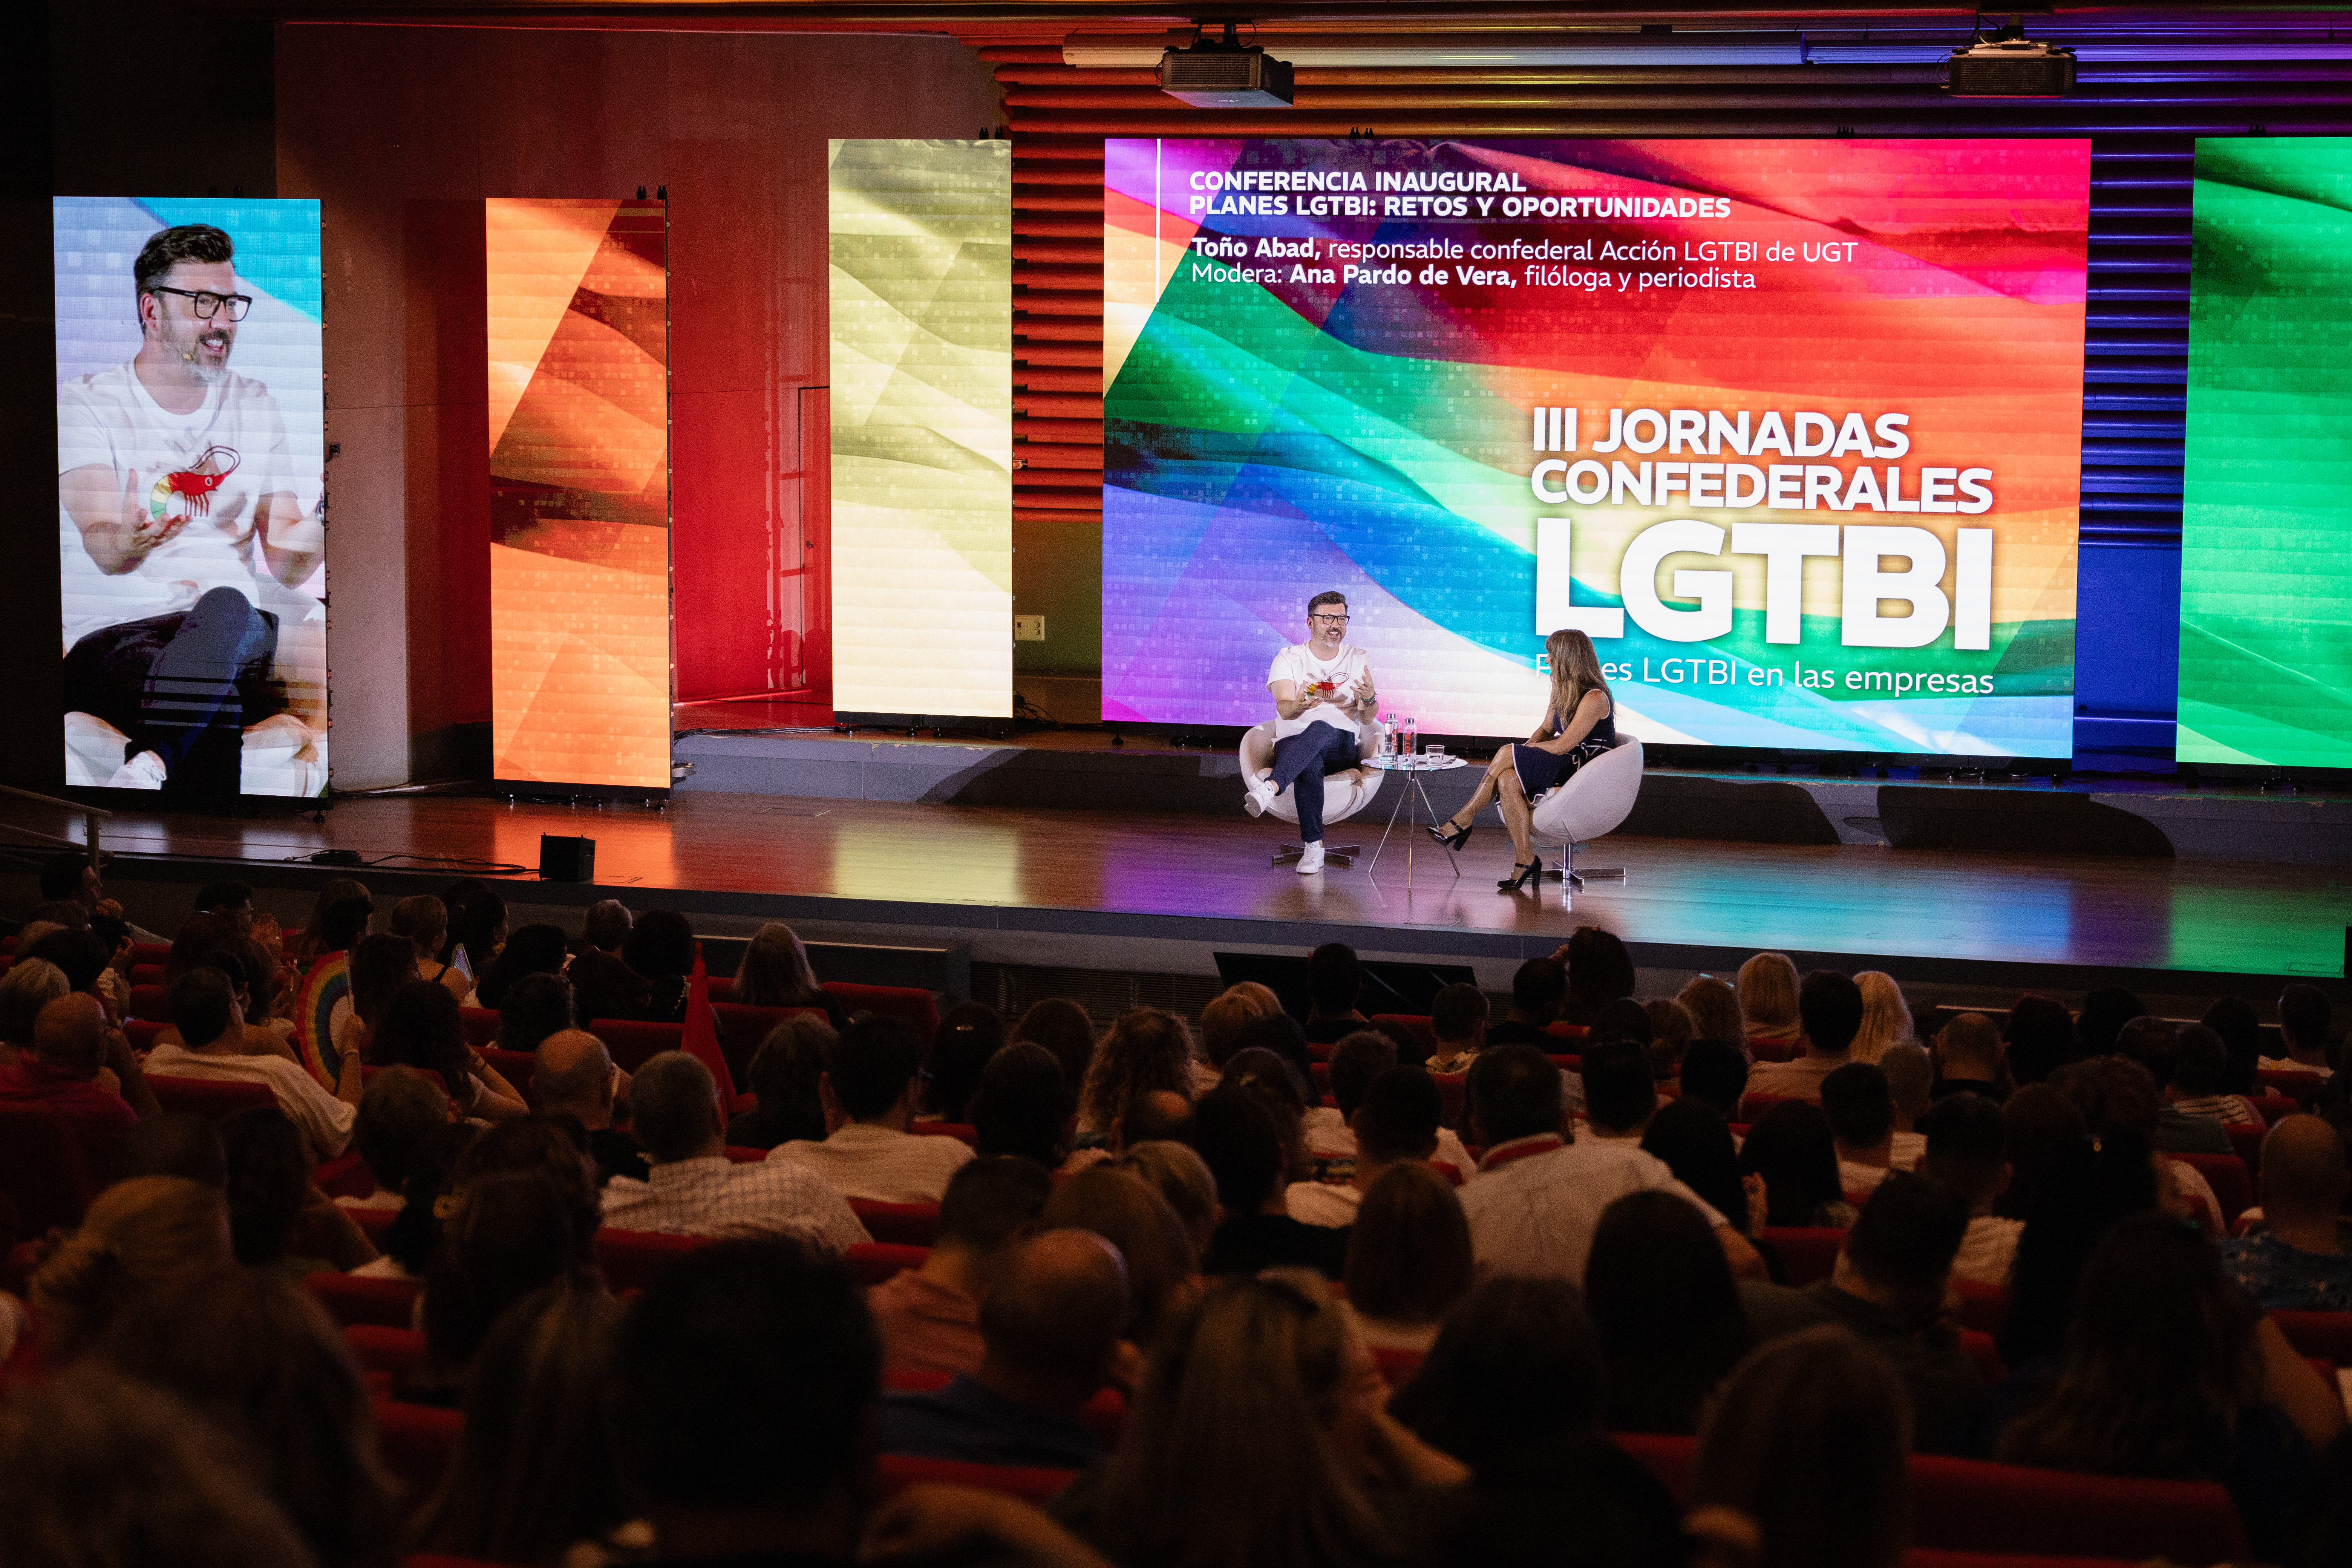 La conferencia inaugural trata sobre planes LGTBI: retos y oportunidades